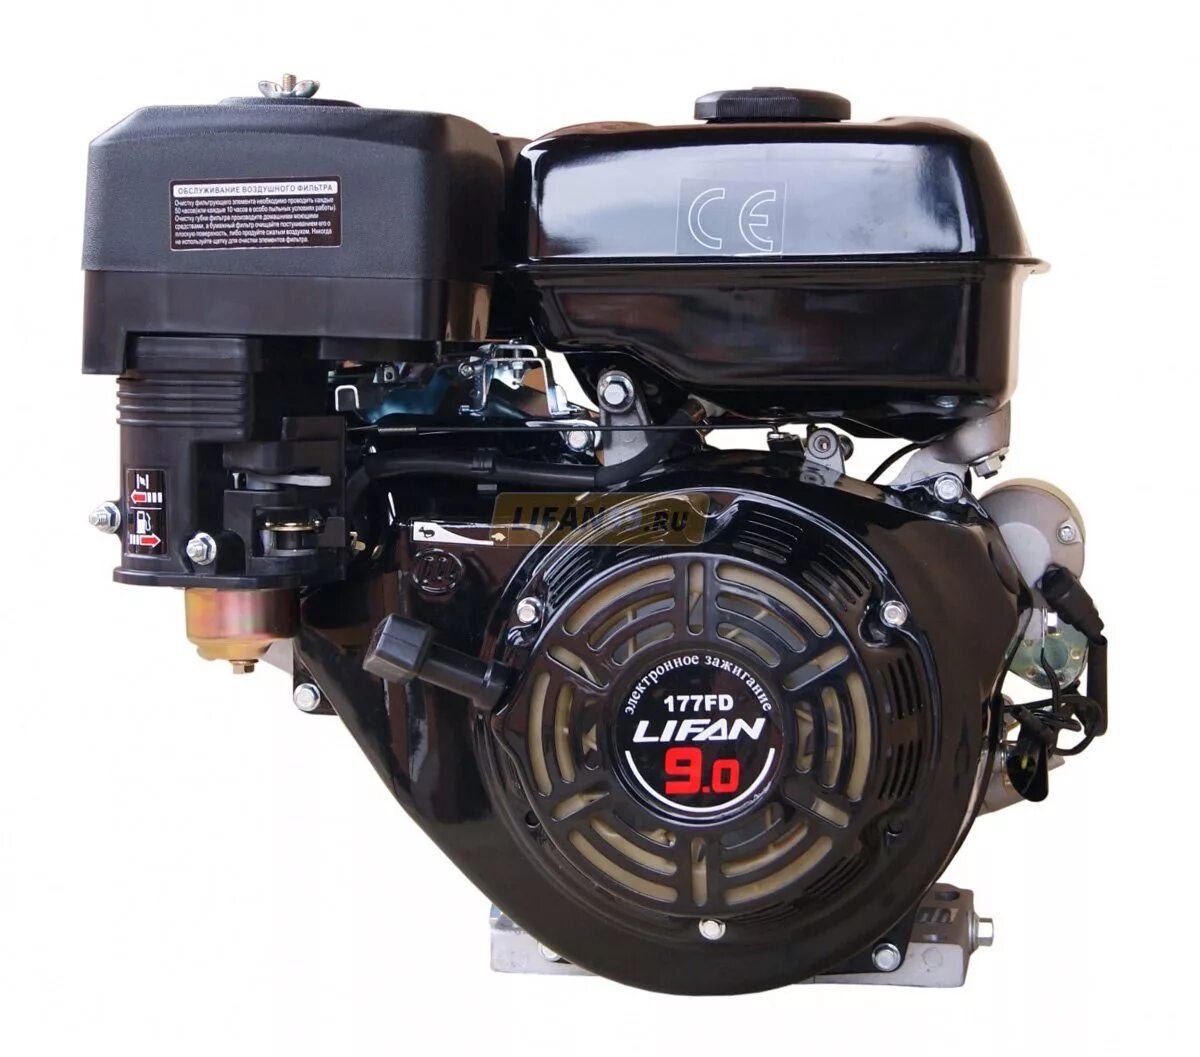 Двигатели lifan с электростартером. Двигатель Lifan 177fd. Двигатель бензиновый Lifan 177f (9 л.с.). Лифан 177fd. Двигатель Лифан 177fd 9 л.с с электростартером.